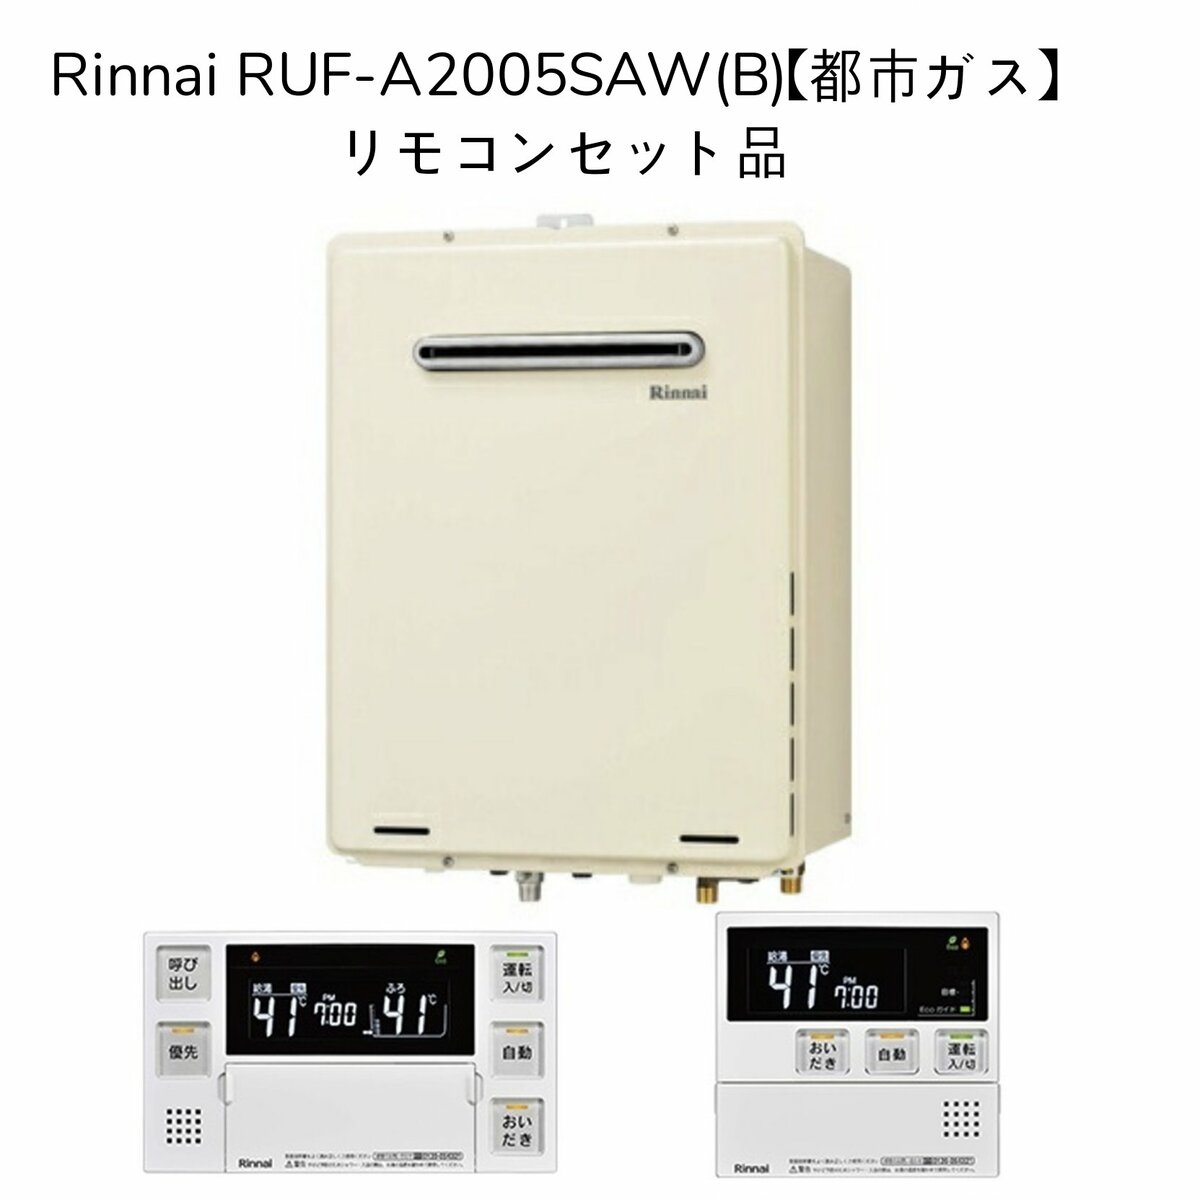 総合通販PREMOA Yahoo!店Rinnai RUF-A2005AW(B)-13A ガスふろ給湯器